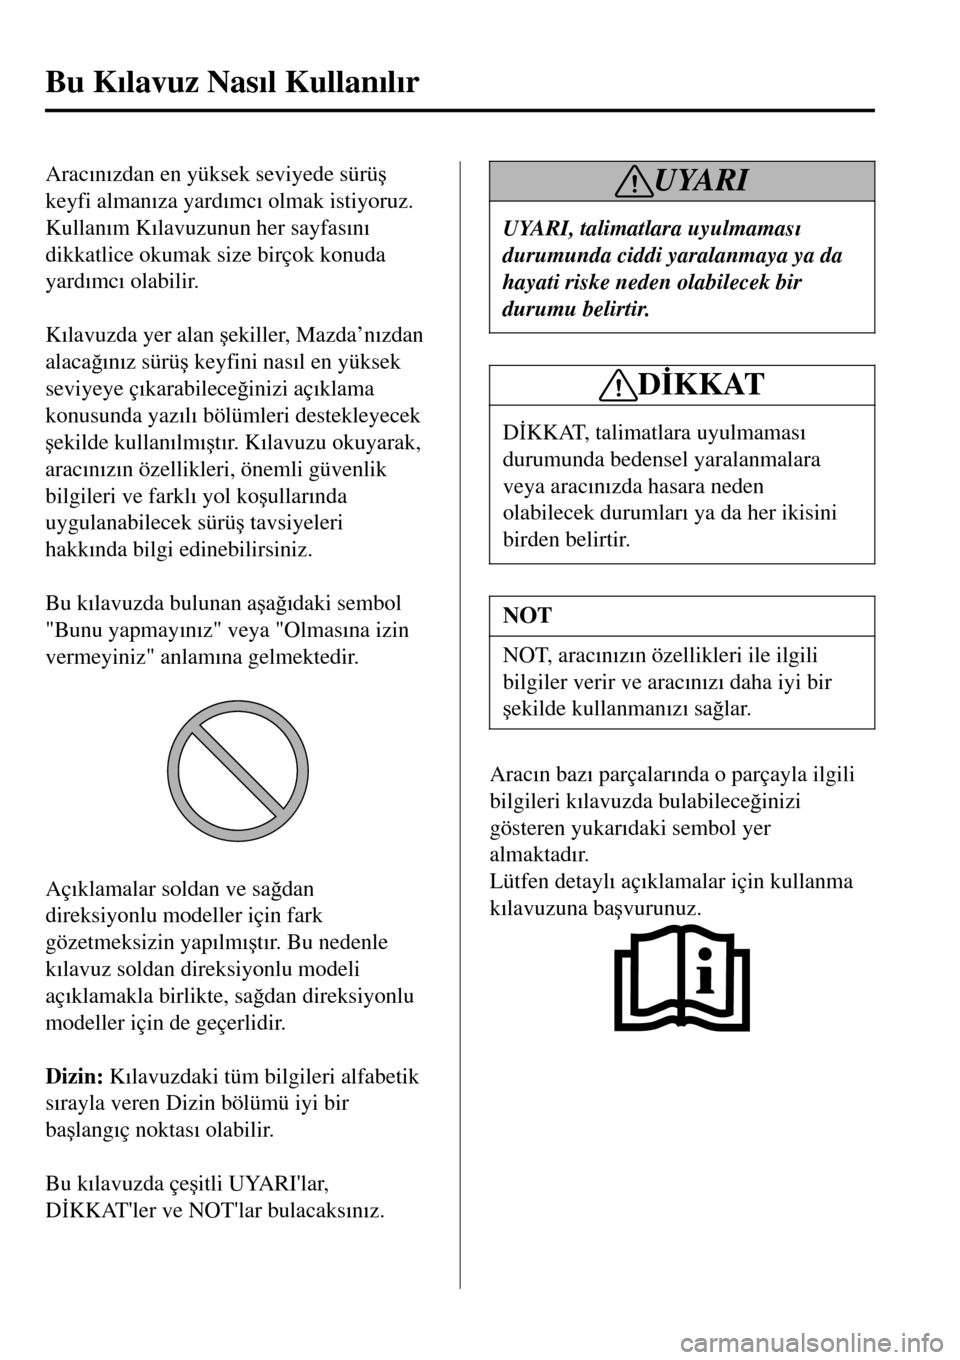 MAZDA MODEL 3 HATCHBACK 2016  Kullanım Kılavuzu (in Turkish) Arac�Õn�Õzdan en yüksek seviyede sürü�ú
keyfi alman�Õza yard�Õmc�Õ olmak istiyoruz.
Kullan�Õm K�Õlavuzunun her sayfas�Õn�Õ
dikkatlice okumak size birçok konuda
yard�Õmc�Õ olabilir.
 
K